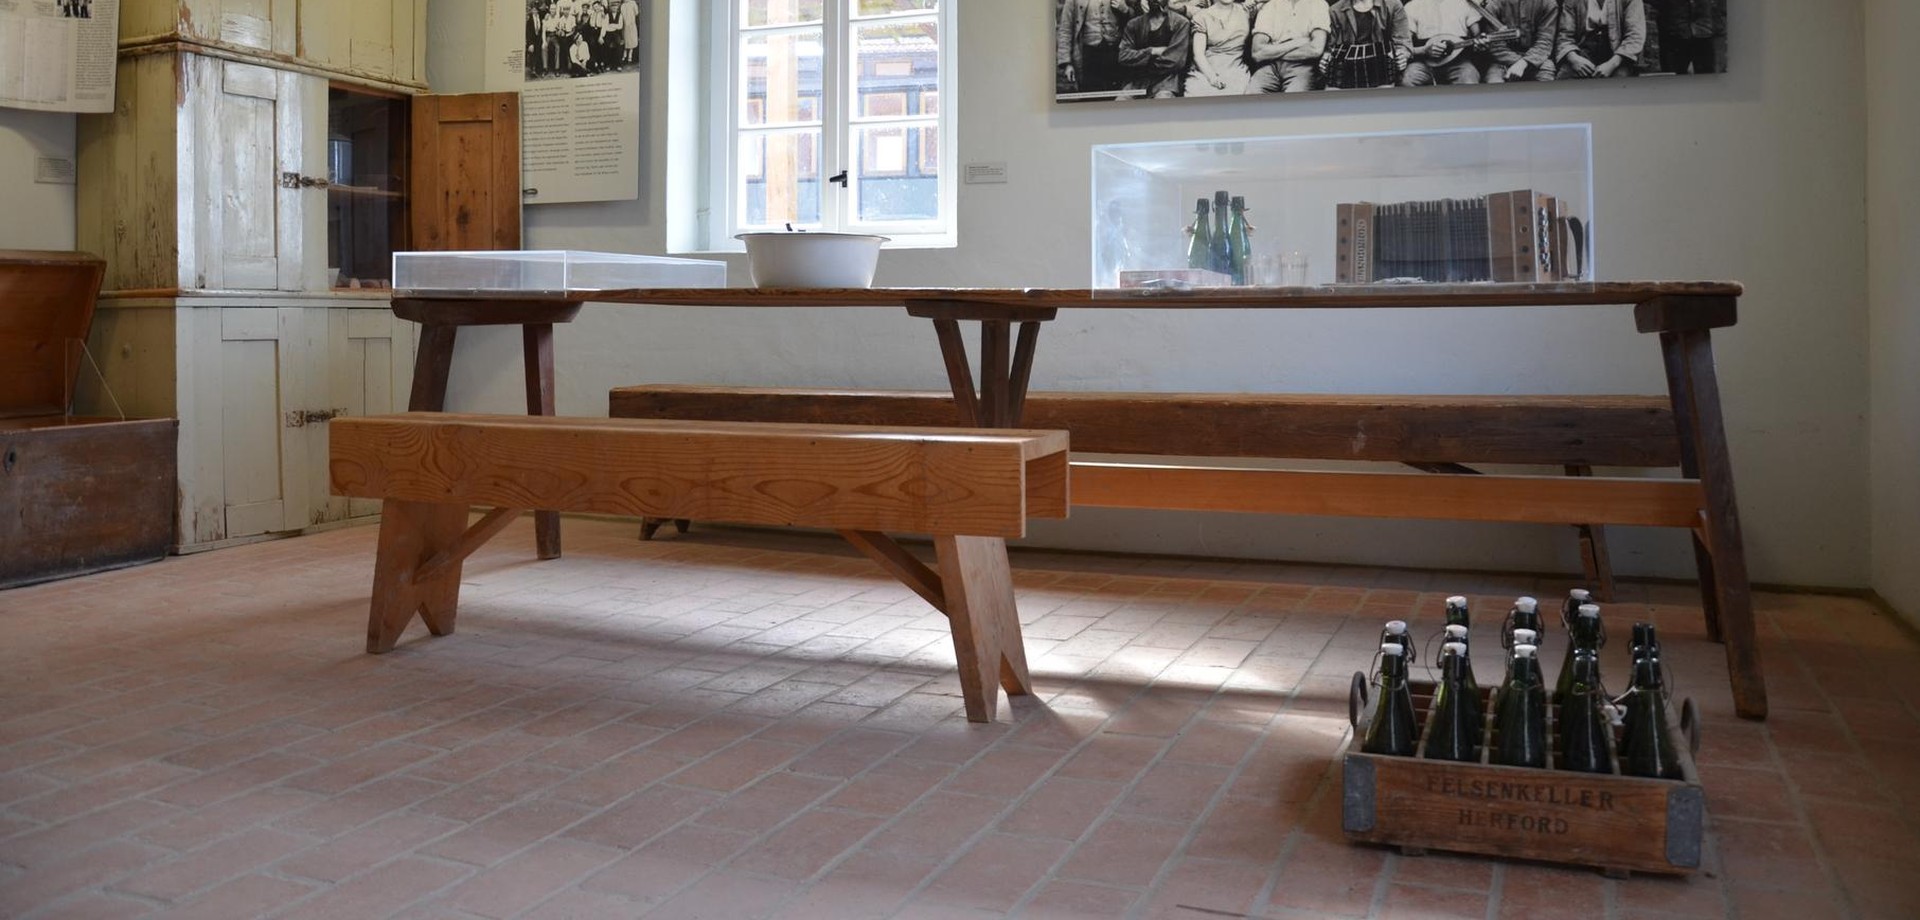 Blick in die Dauerausstellung mit Esstisch, Sitzbank und Schrank.